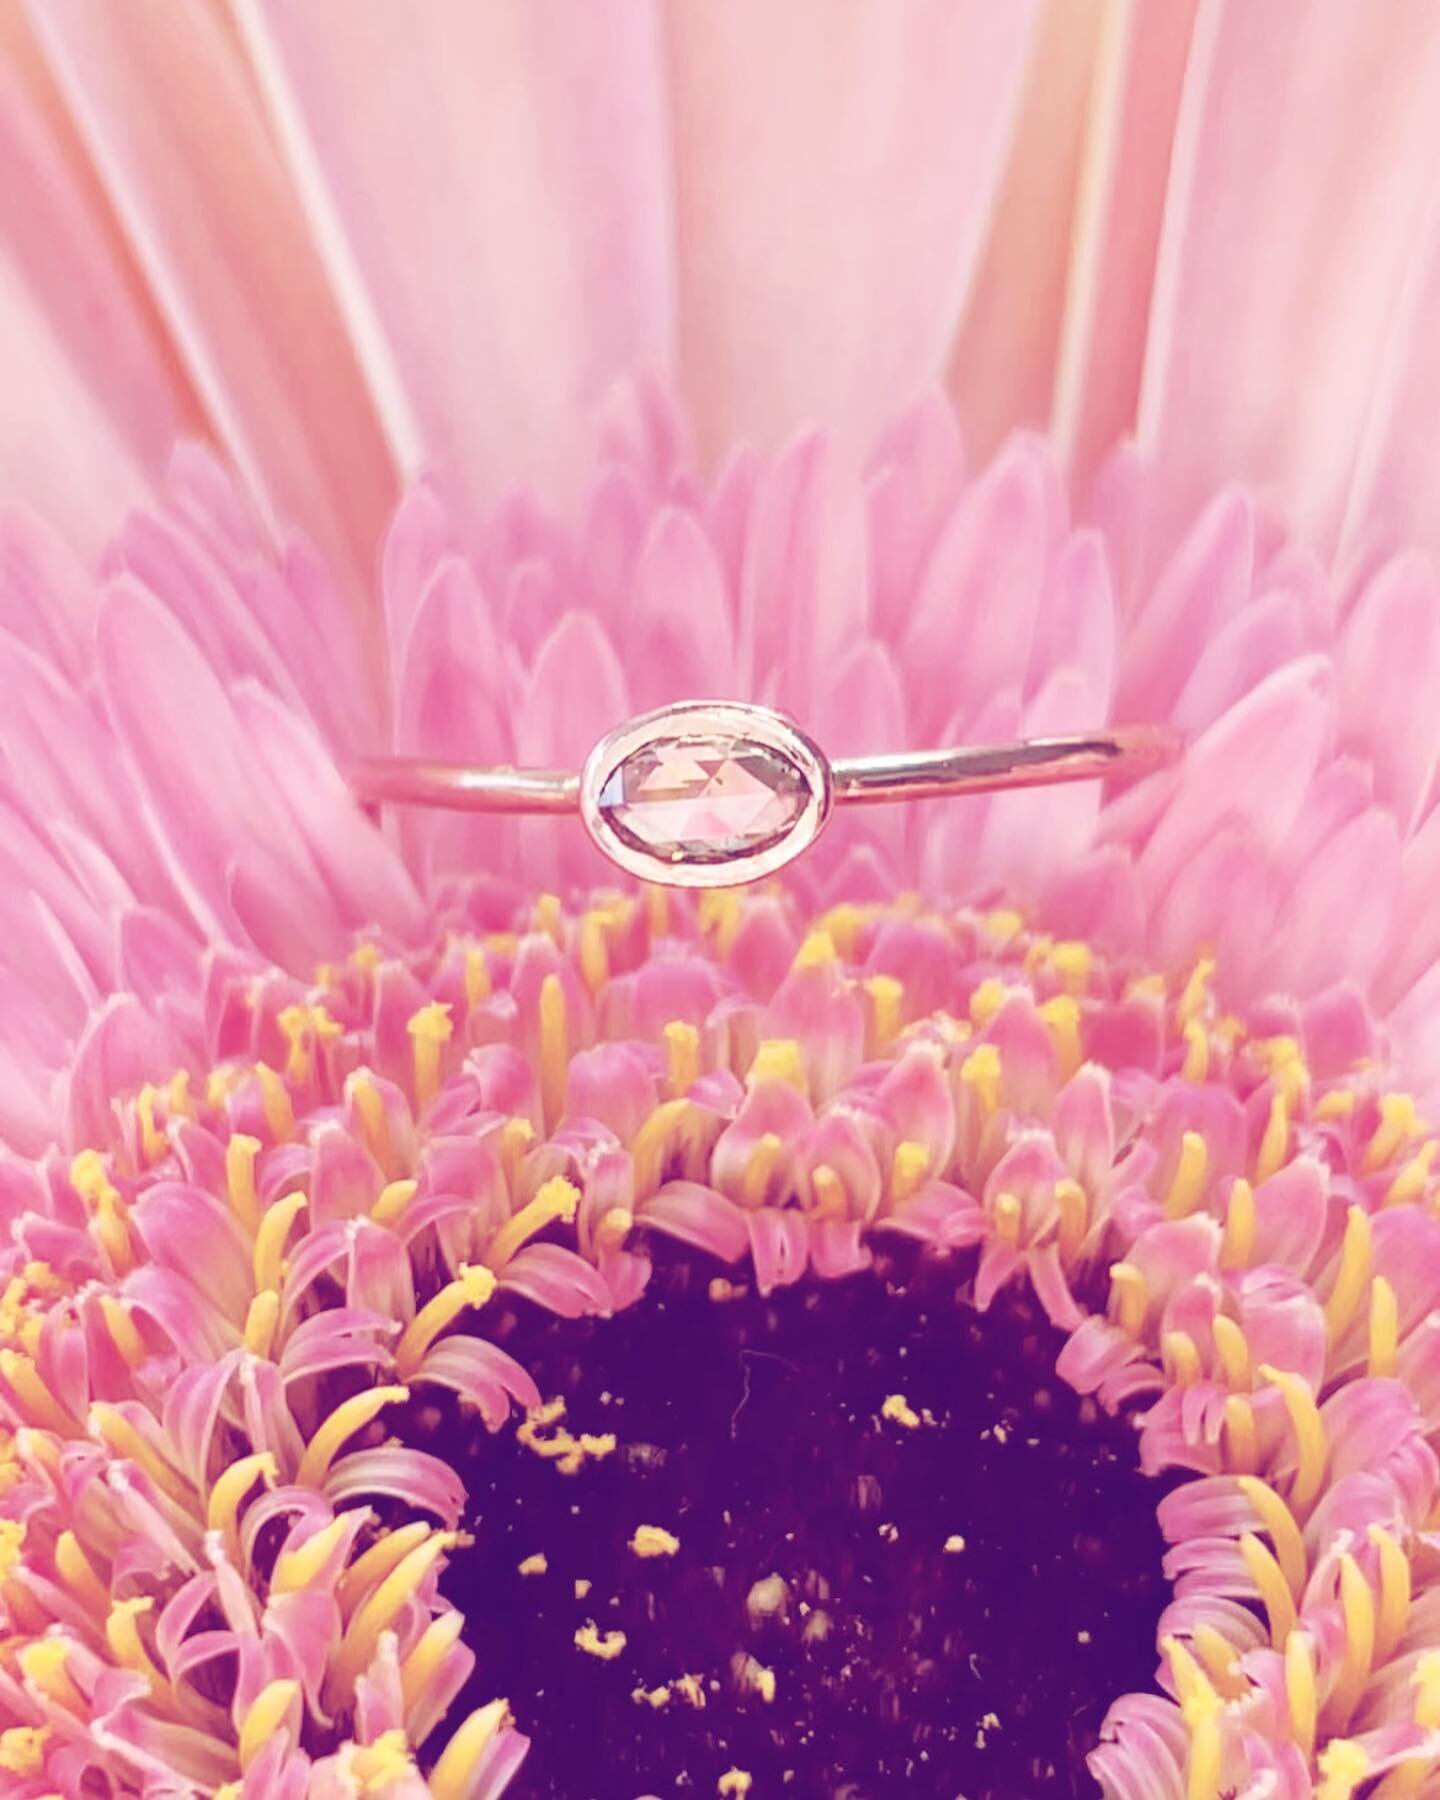 Pretty pinks 💖 On our website ✨#fancypink #pinkdiamond #stacks #stackablerings #diamonds #diamondrings #jewelry #finejewelry #beauty #love #jewels #fancycolored #coloreddiamonds #diamondgirl #rosecut #rosecutdiamonds #flowers